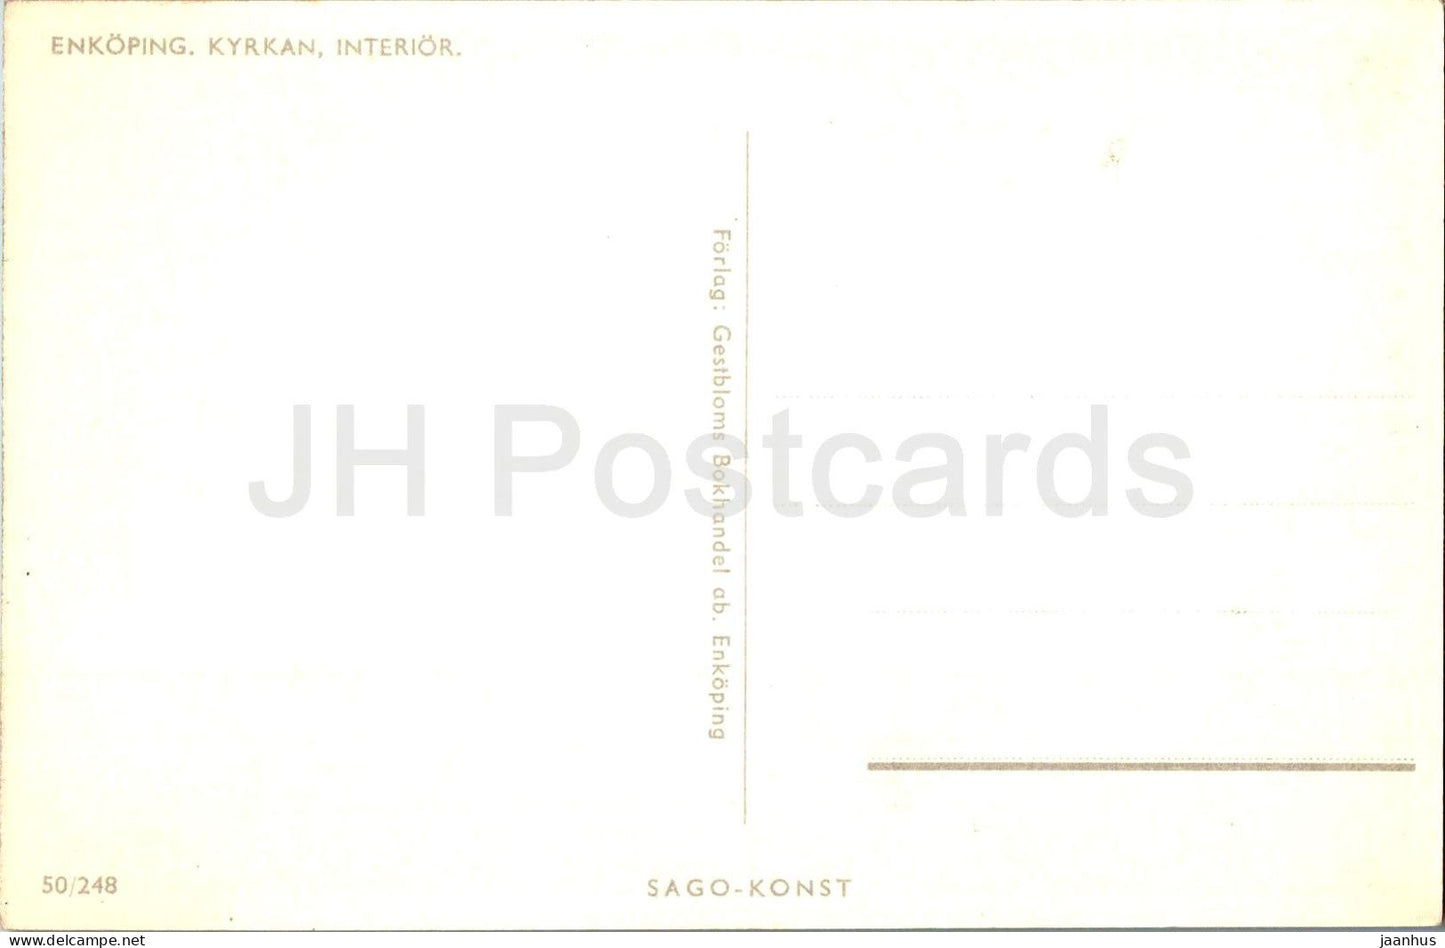 Enkoping Kyrkan - Innenraum - Kirche - 50/248 - alte Postkarte - Schweden - unbenutzt 